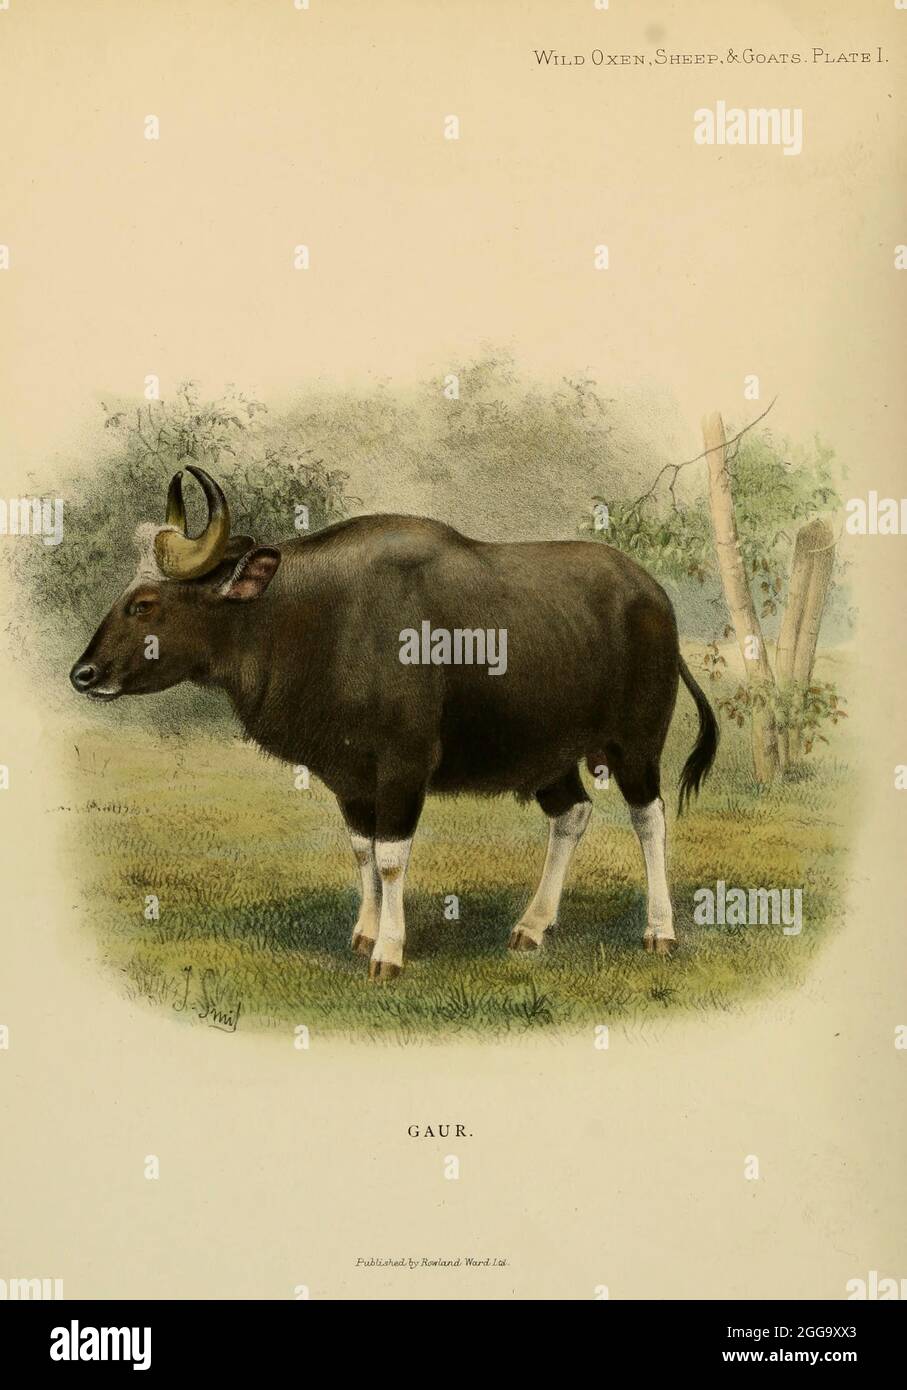 Der Kaur (Bos gaurus), auch bekannt als der indische Wisent, ist ein Rind aus Süd- und Südostasien, Farbdarstellung aus dem Buch "Wilde Ochsen, Schafe und Ziegen aller Länder, lebende und ausgestorbene" von Richard Lydekker (1849-1915) Veröffentlicht 1898 von Rowland ward, London Stockfoto